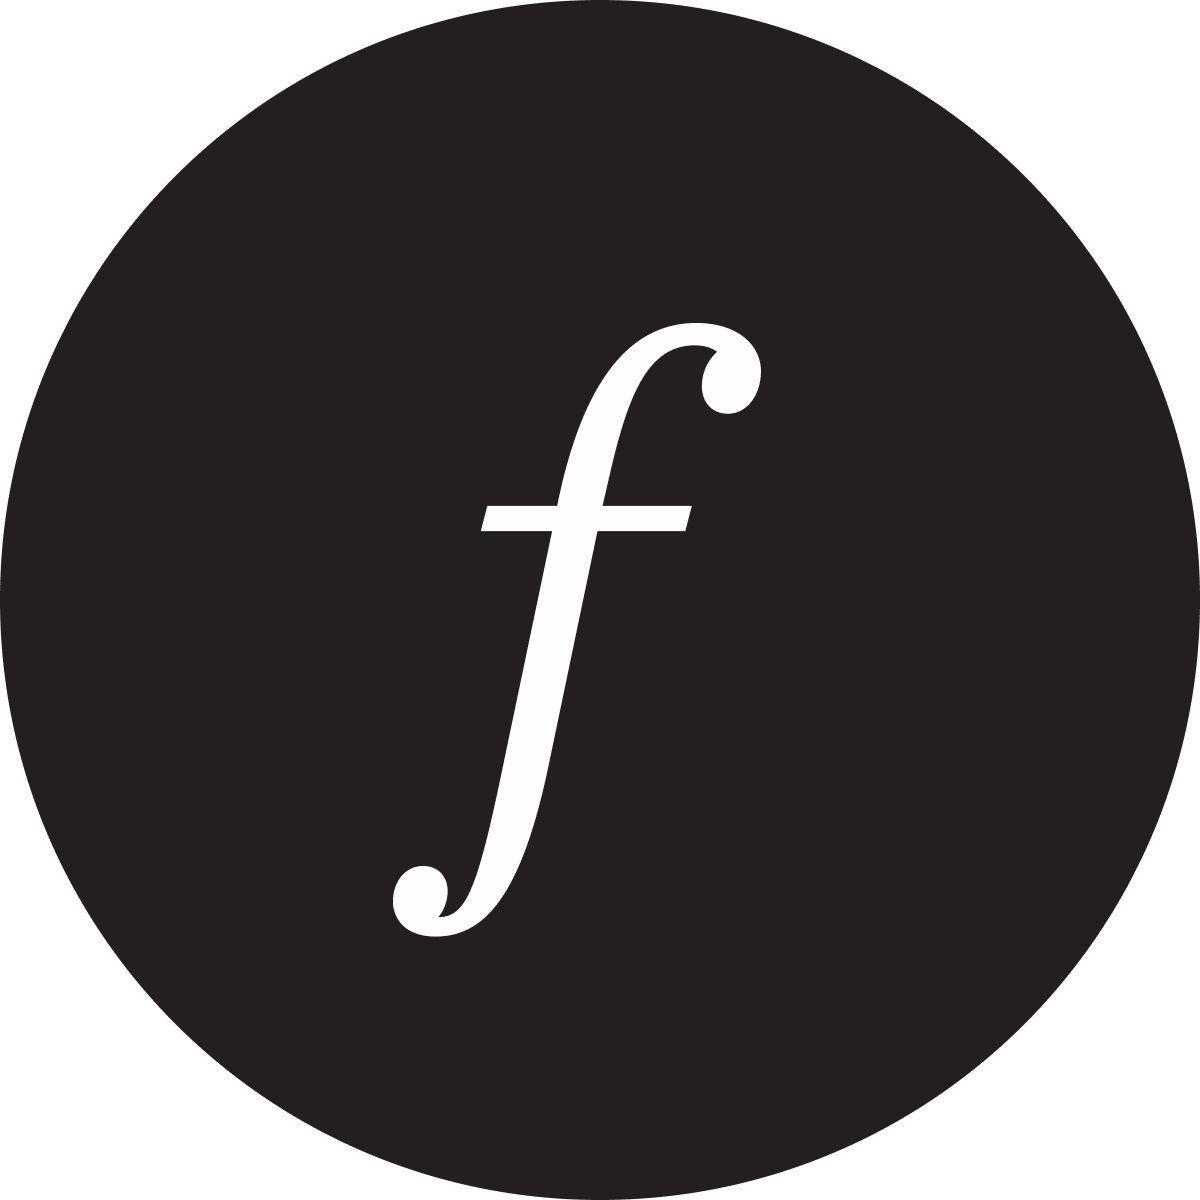 https://news.faire.com/wp-content/uploads/2021/02/Faire-Logo.png